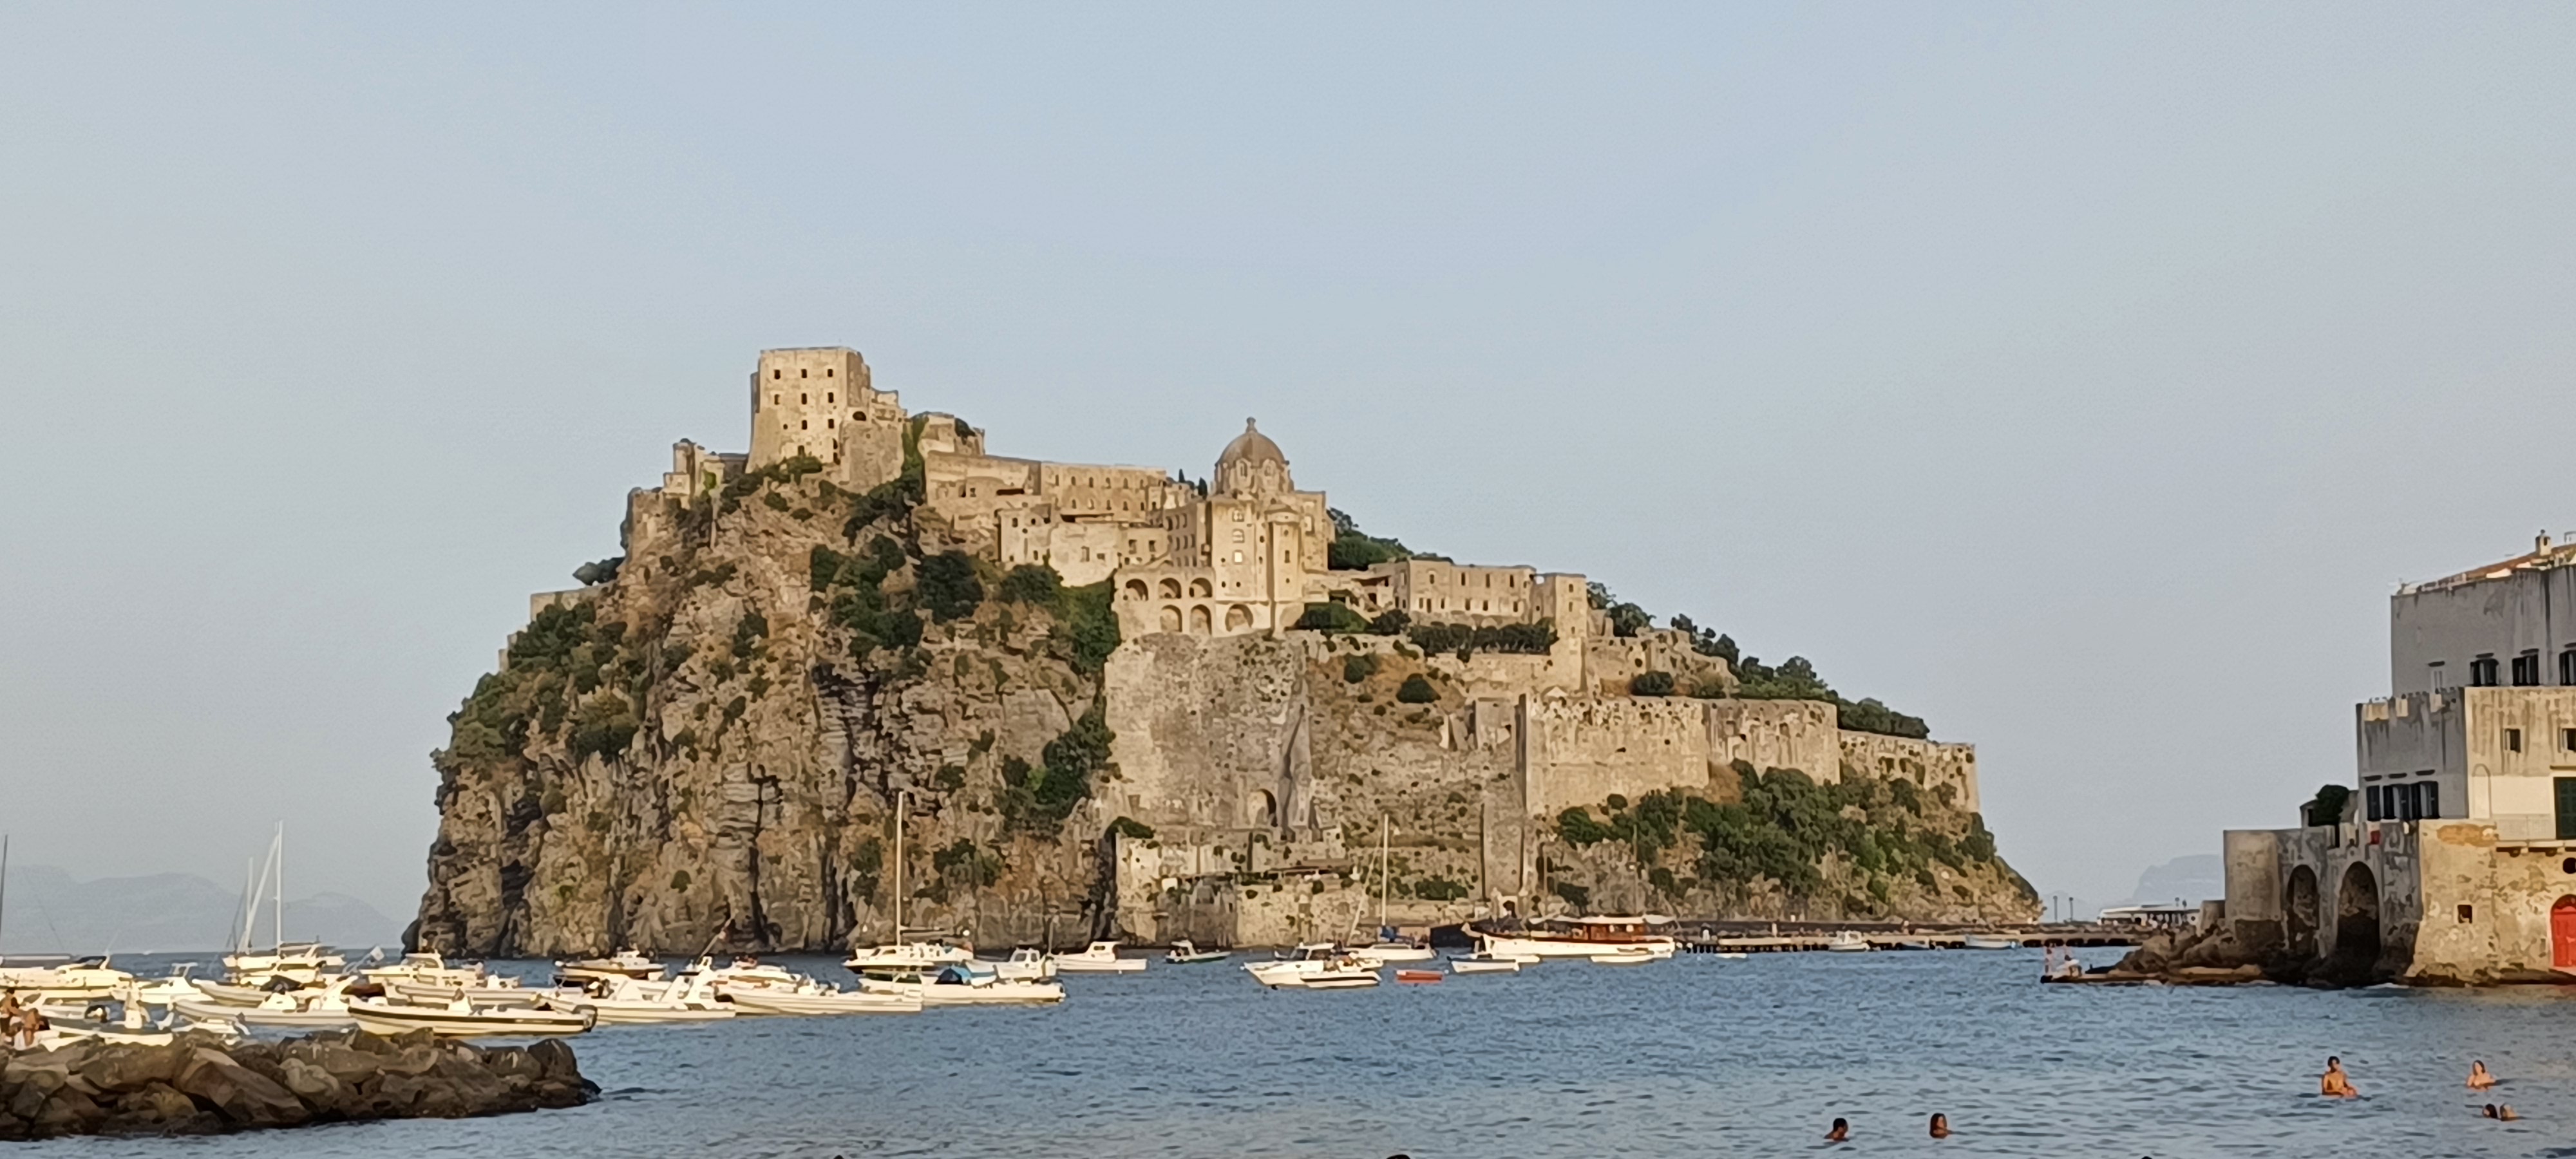 Cosa vedere a Ischia in 2 giorni: Castello Aragonese